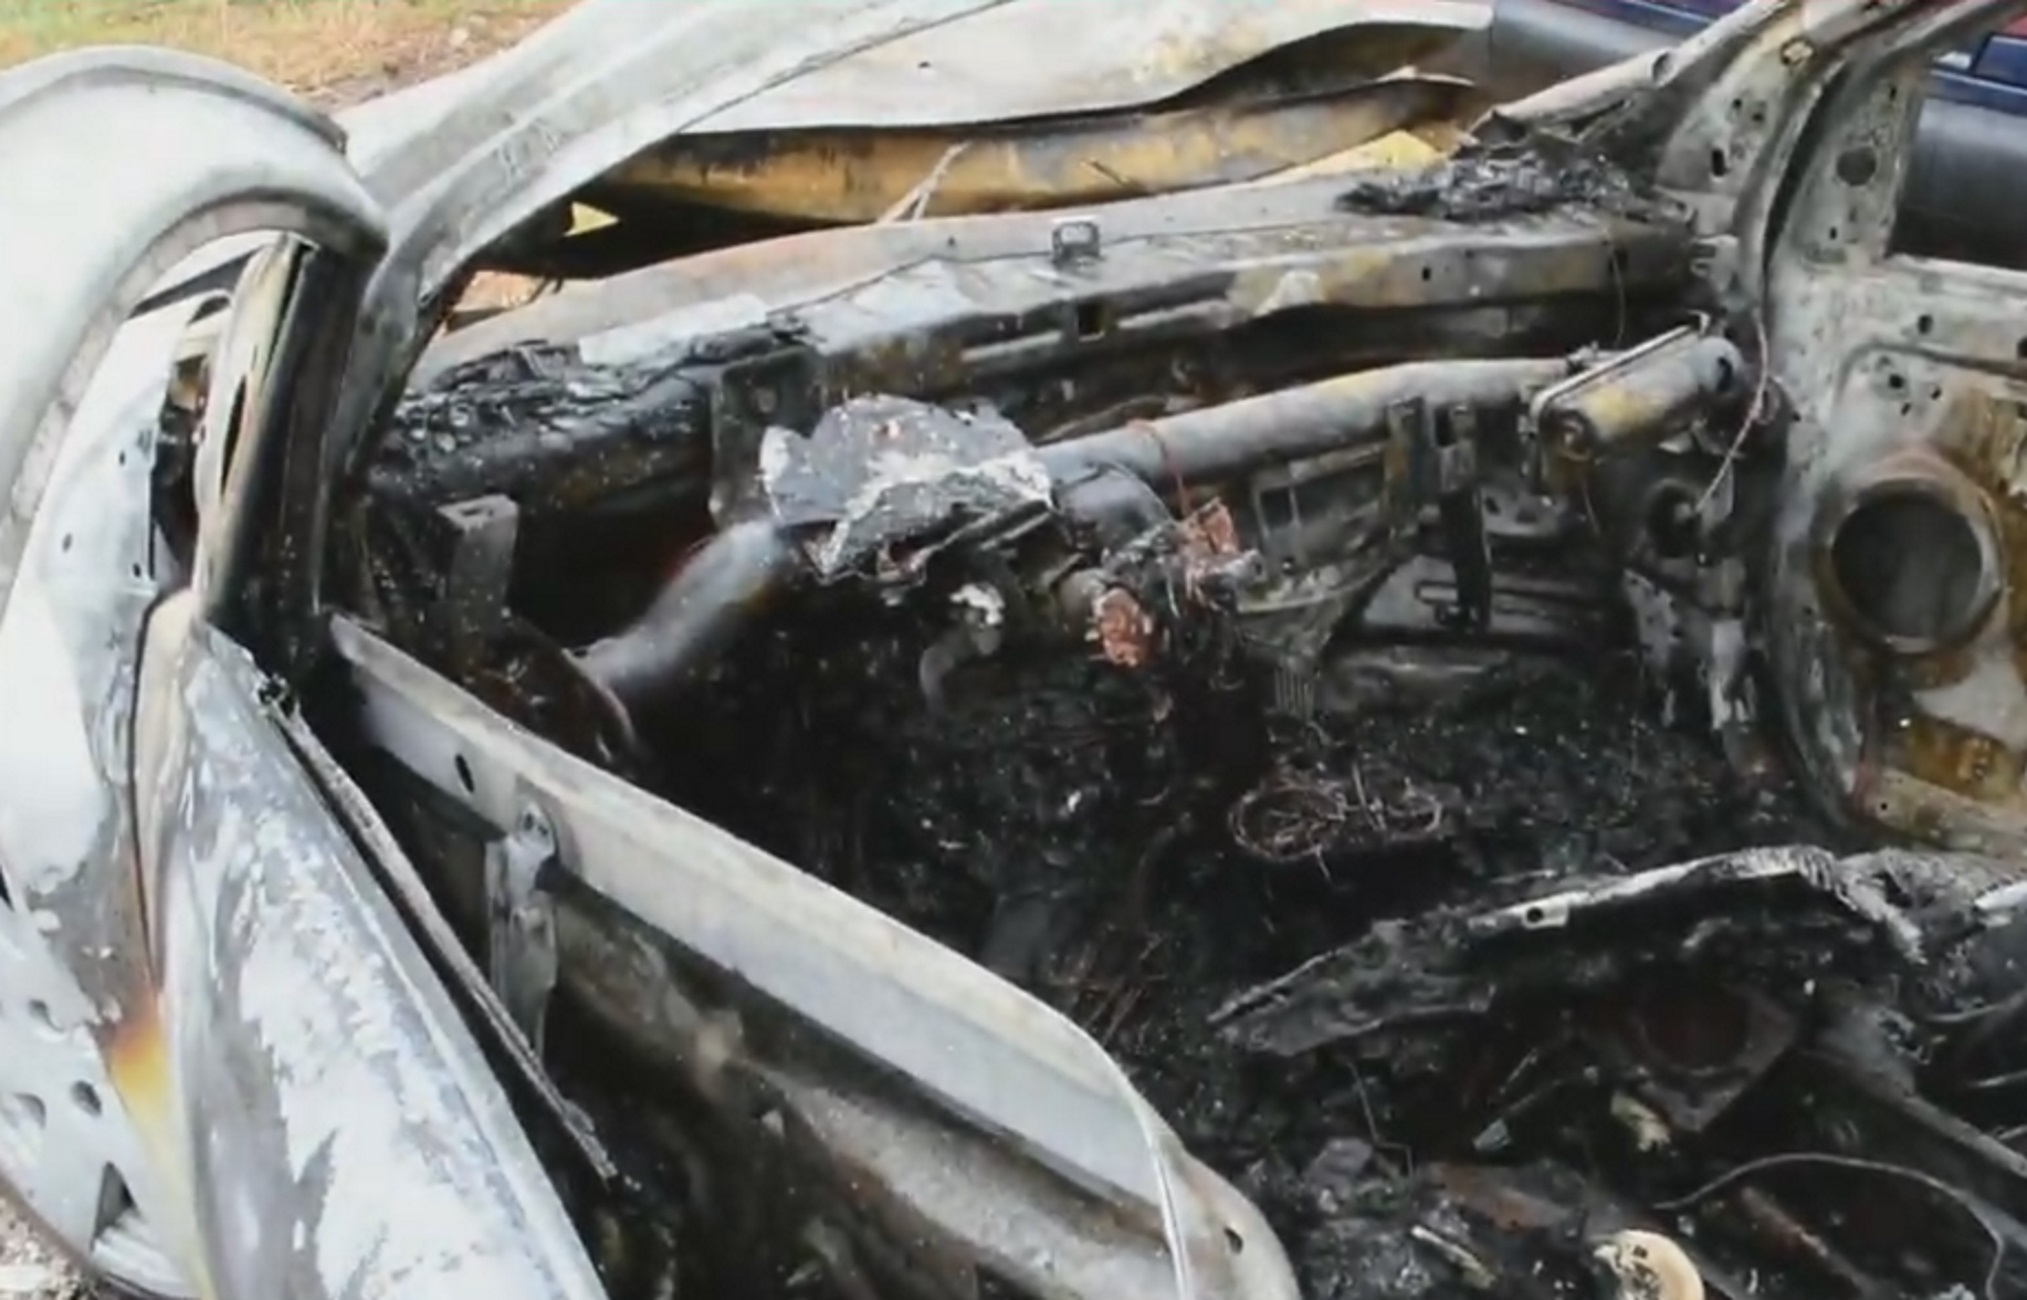 Αργολίδα: Φρικτό τροχαίο με απανθρακωμένο οδηγό! Κάηκε ζωντανός μέσα σε αυτό το αυτοκίνητο (Βίντεο)